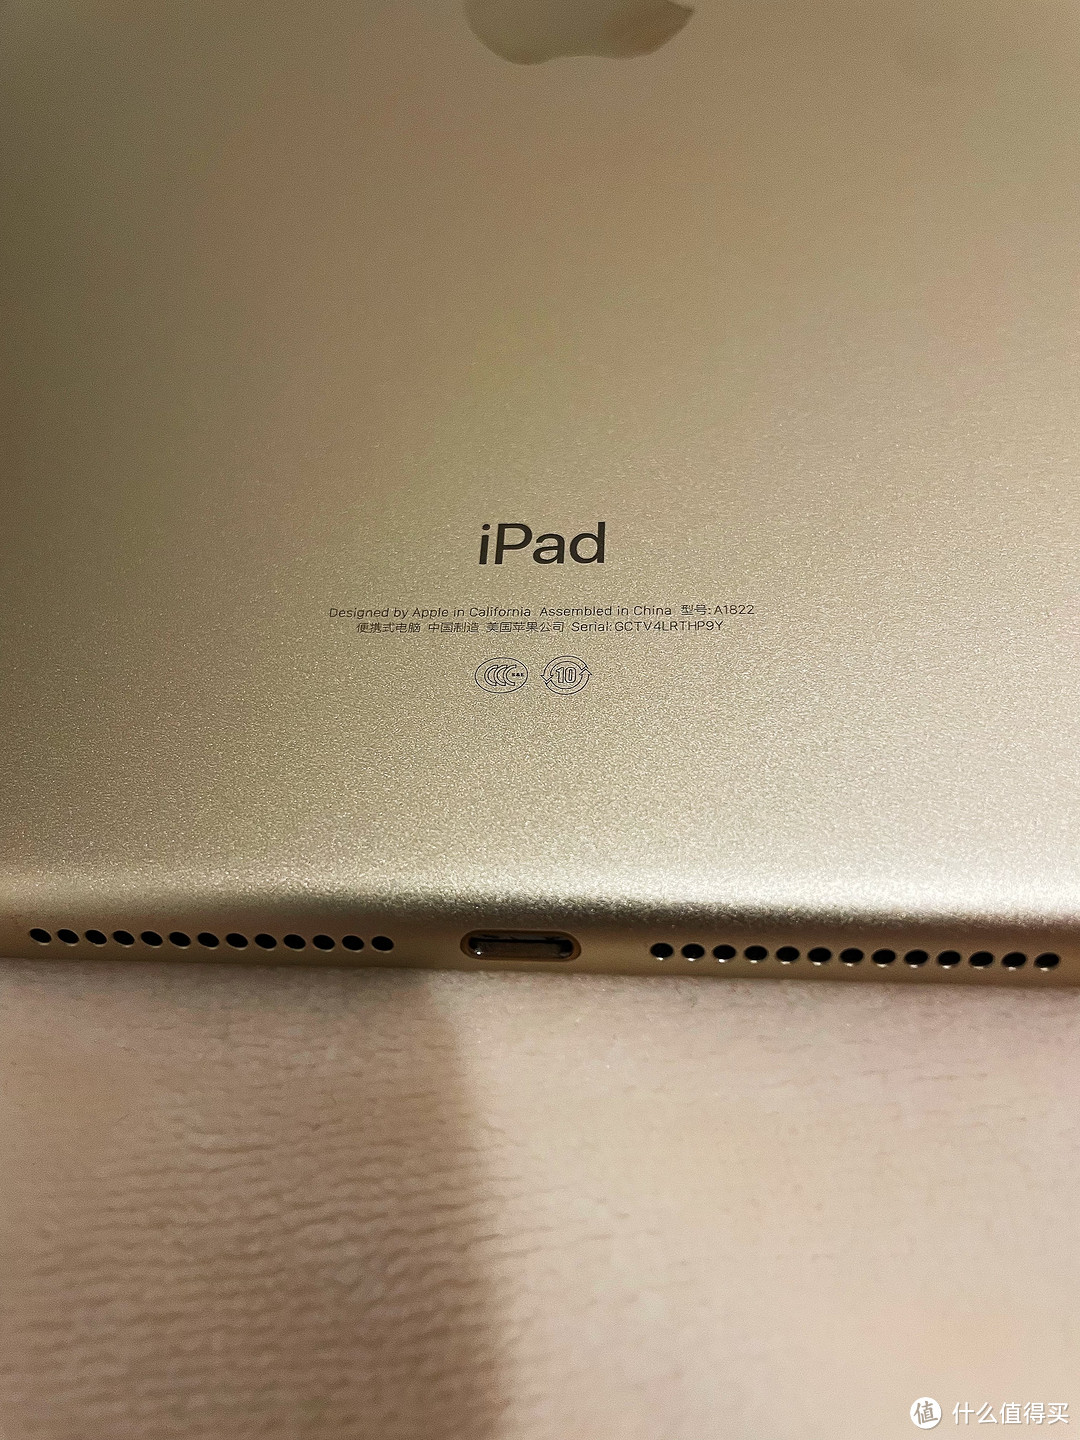 不会吧，真的有人拿六年的iPad换不锈钢脸盆的吗？